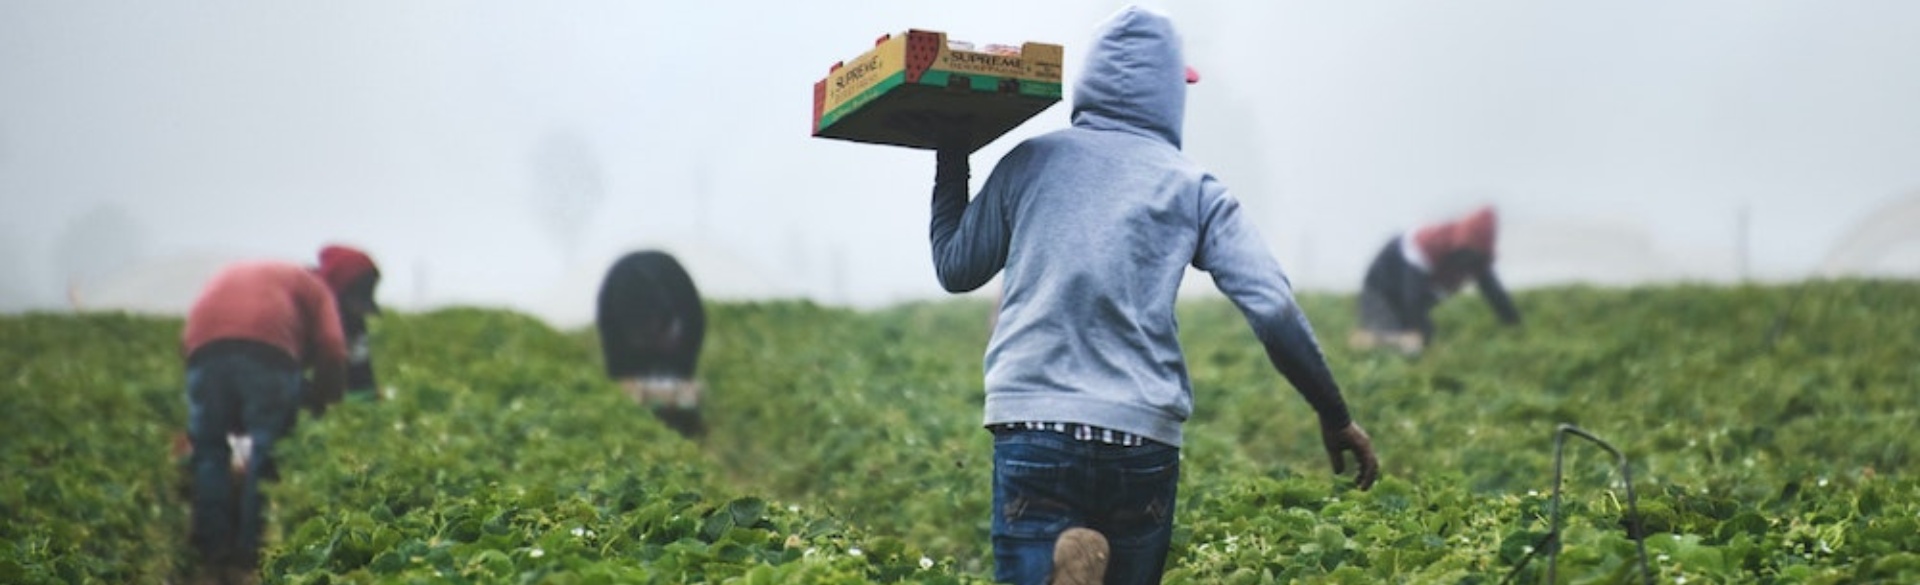 farm worker walking in field holding fruit crate